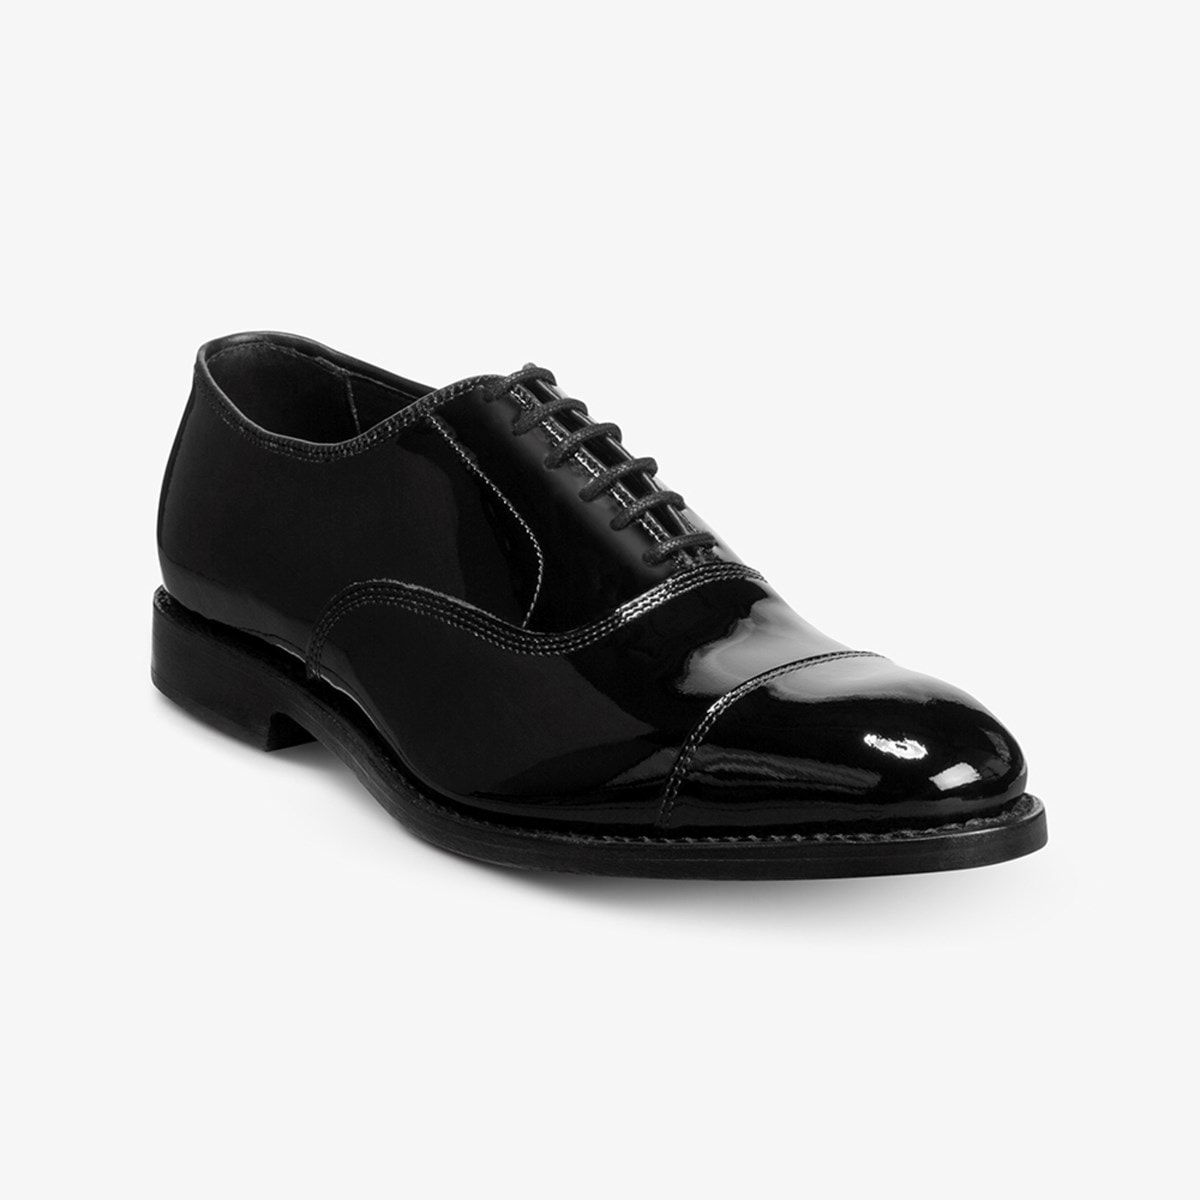 Park Avenue Cap-toe Oxford Dress Shoe | Men's Dress | Allen Edmonds